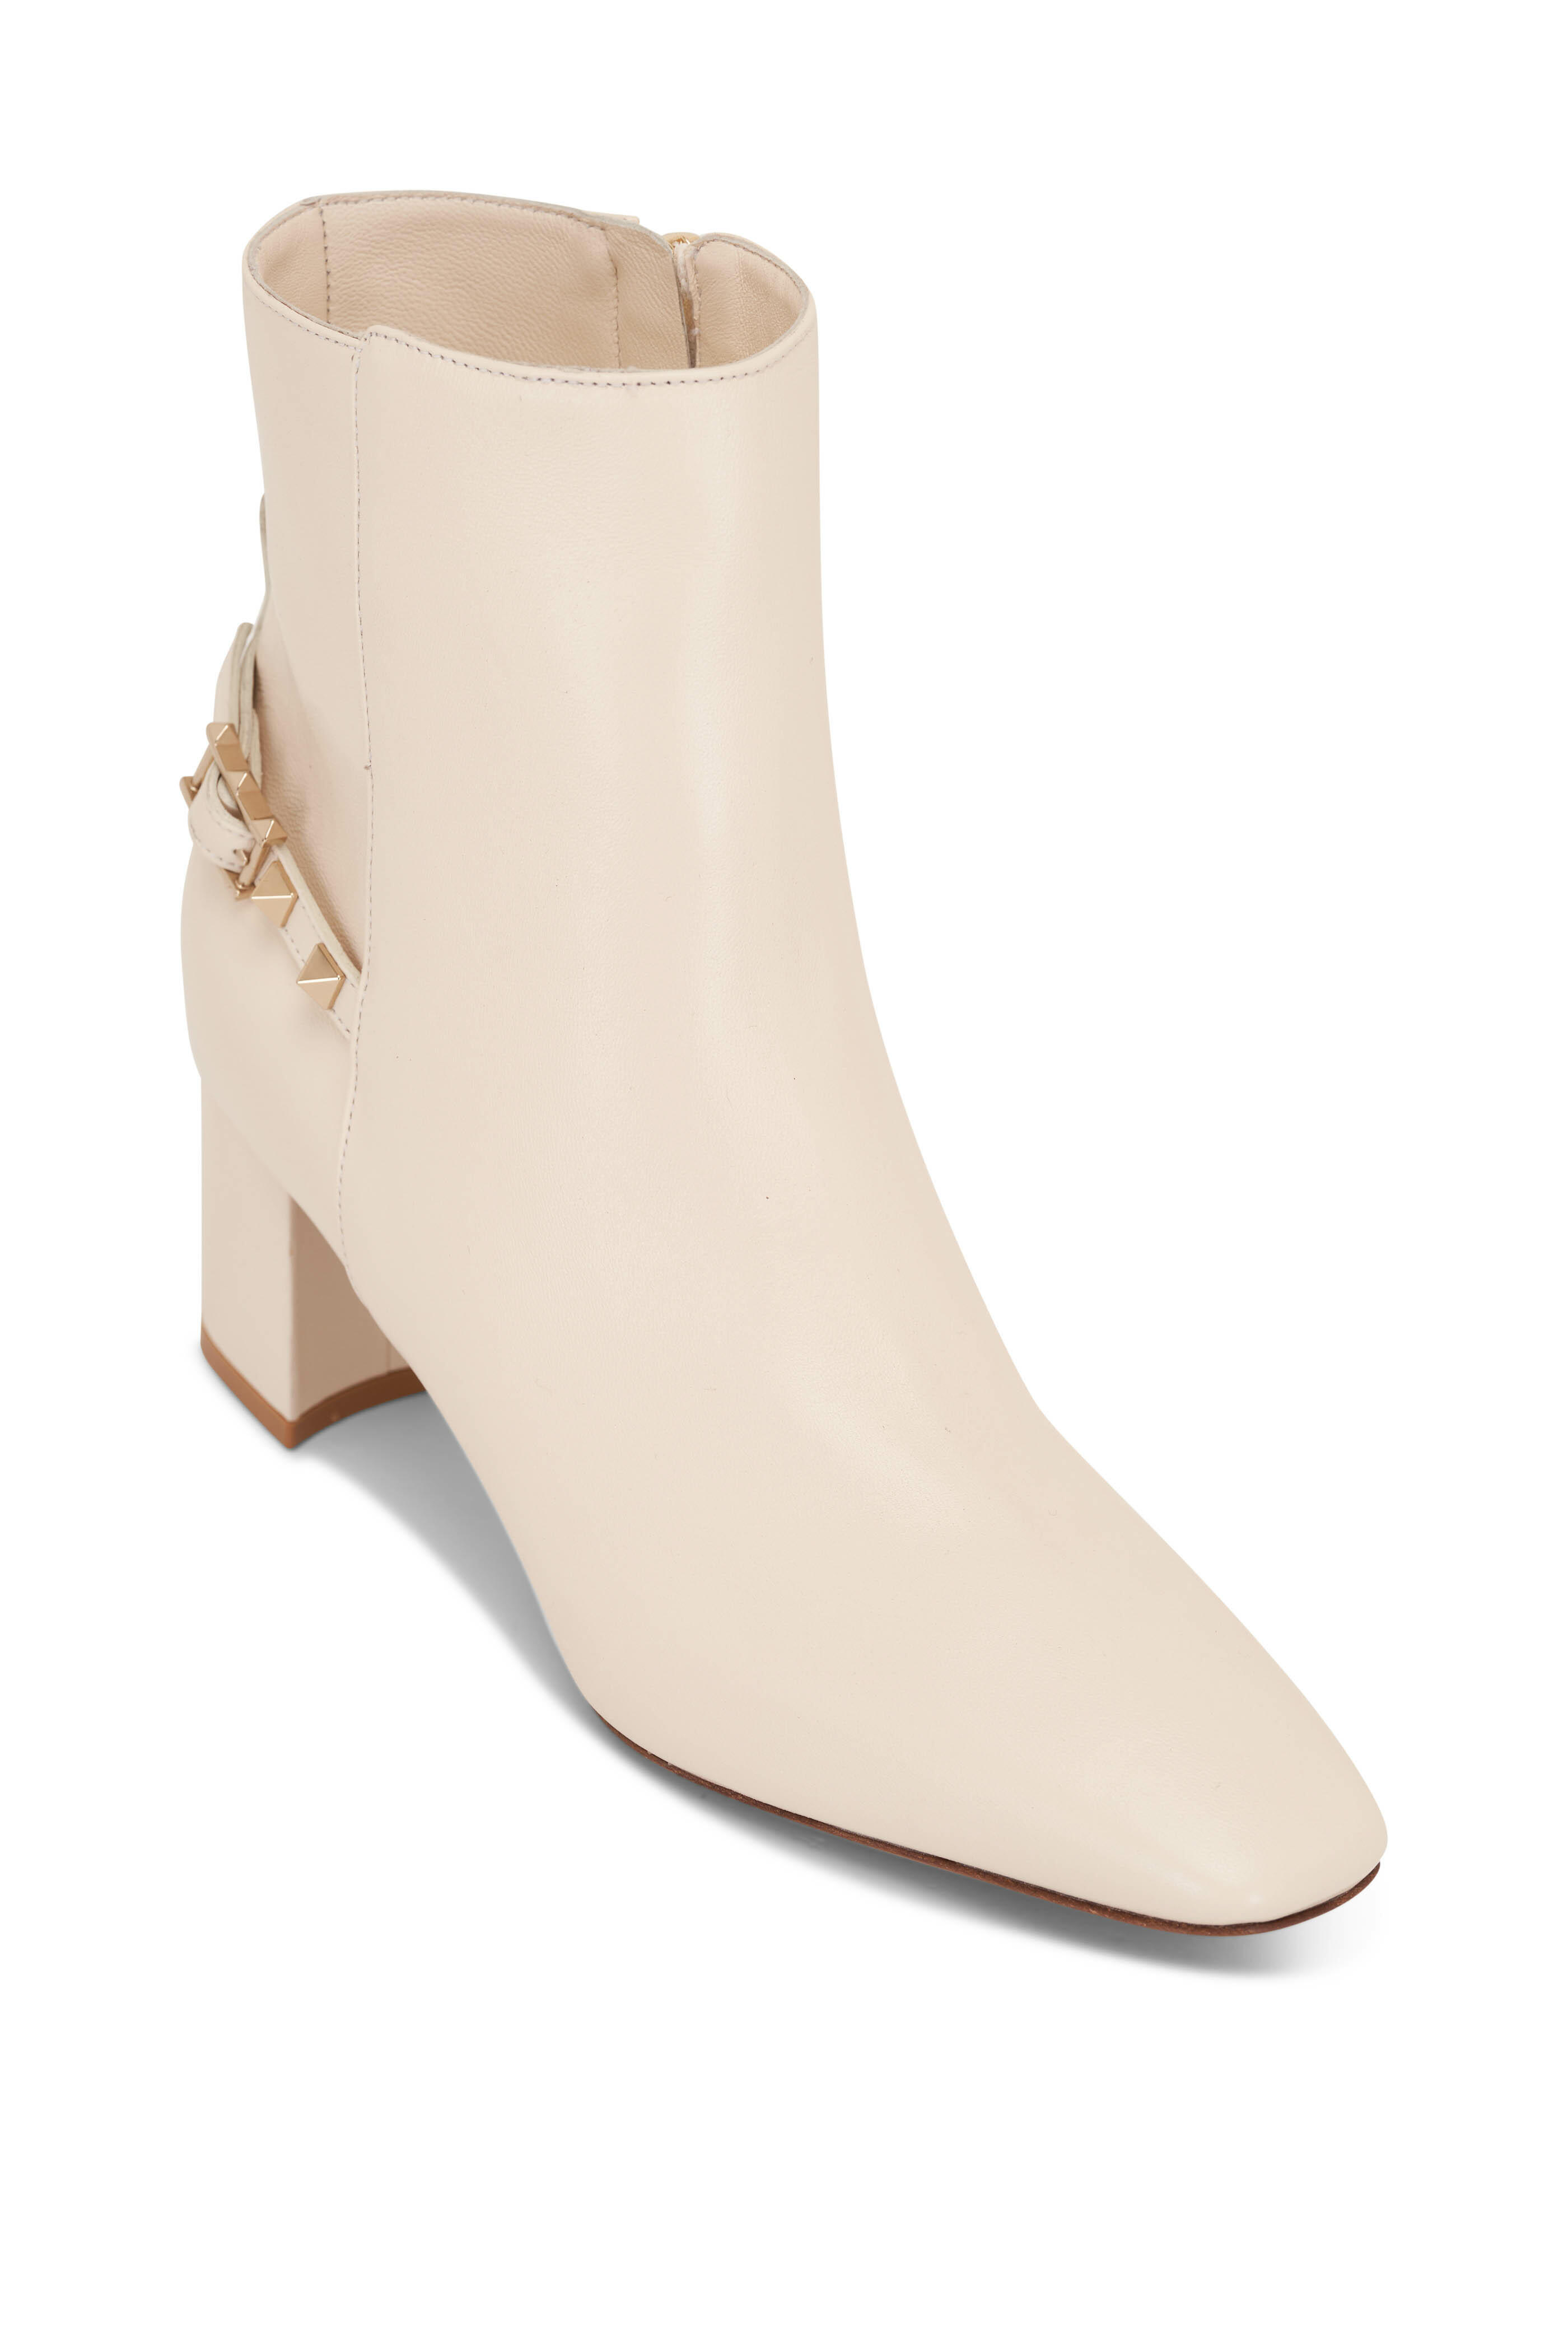 Valentino Women's Beige Boots